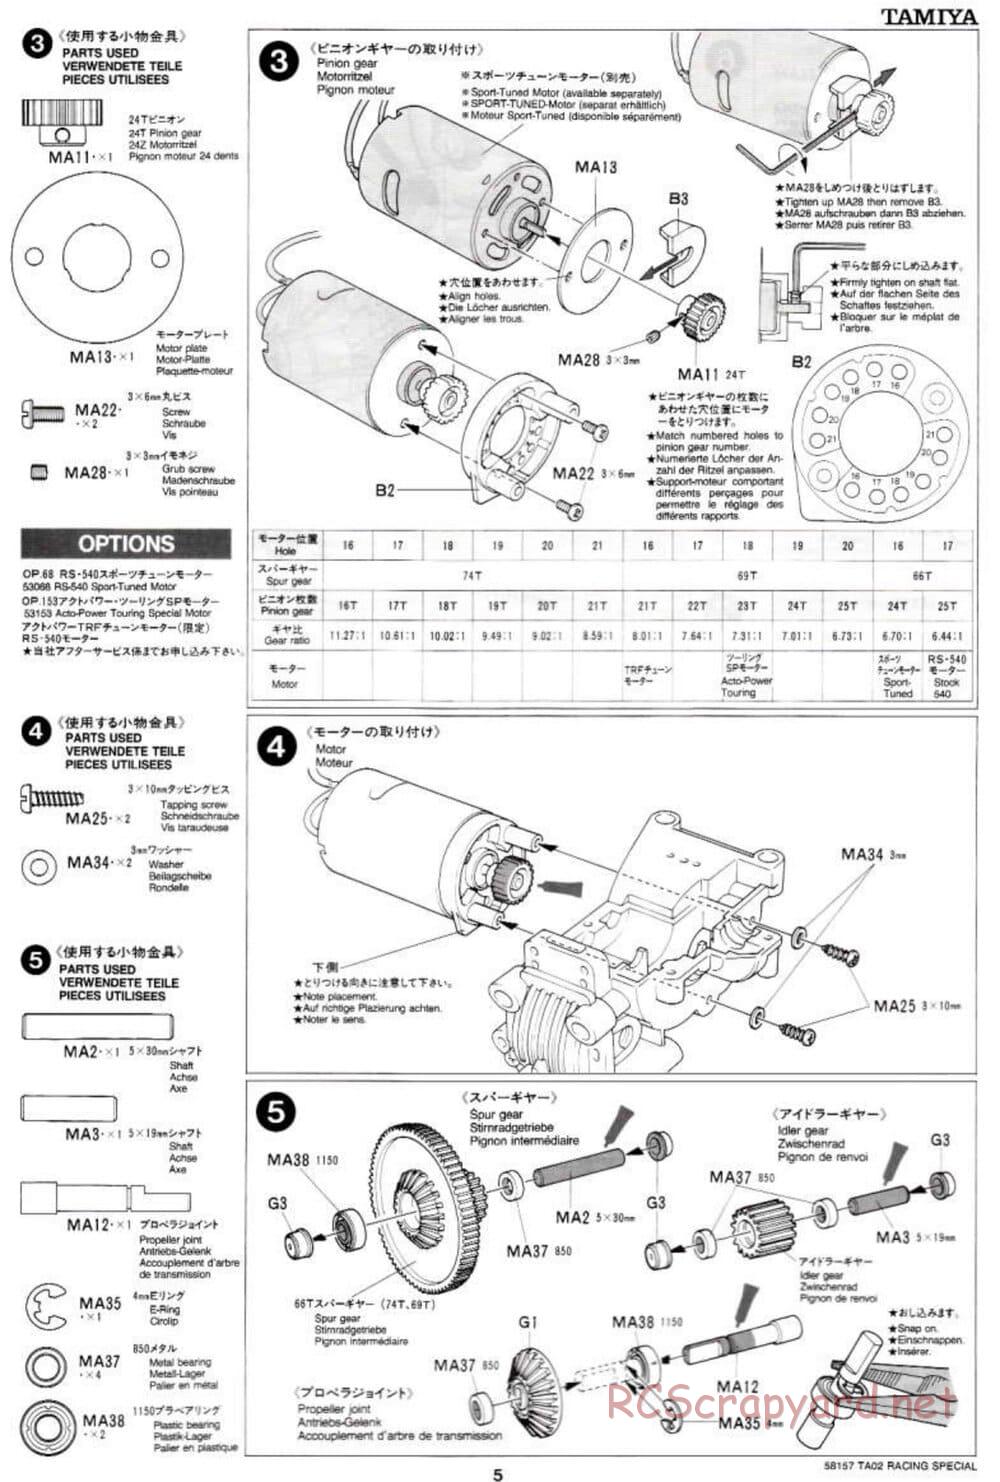 Tamiya - TA-02RS Chassis - Manual - Page 5